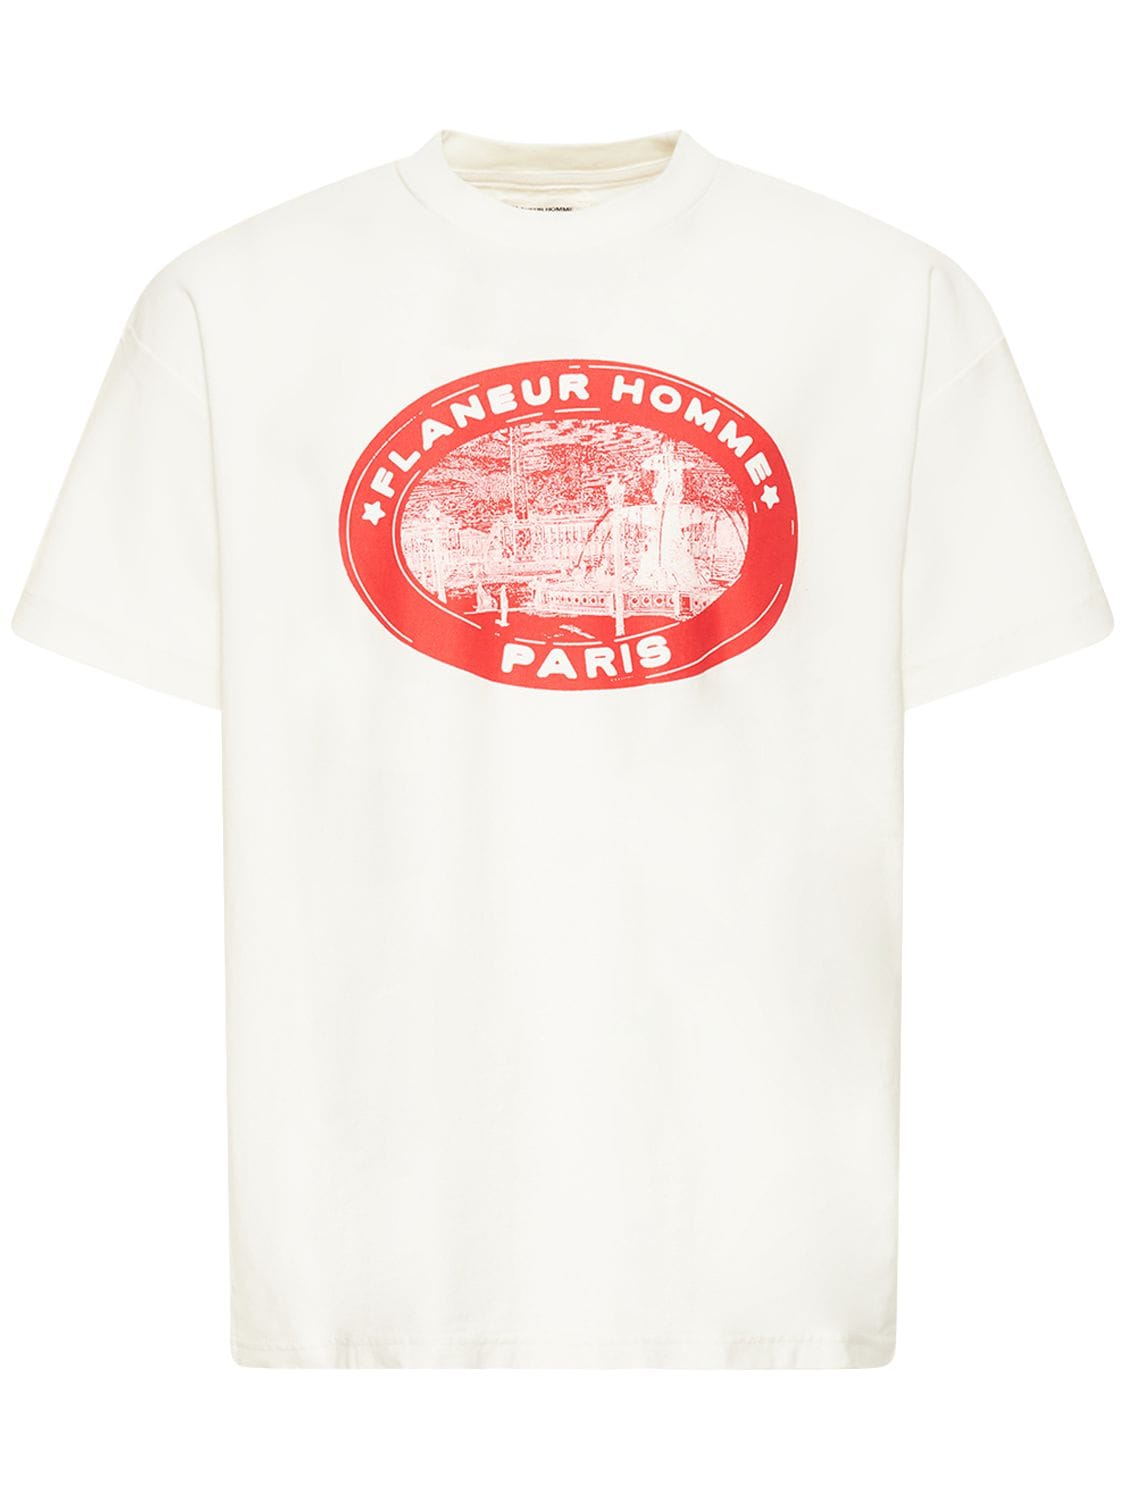 T-shirt En Coton Imprimé - FLANEUR HOMME - Modalova